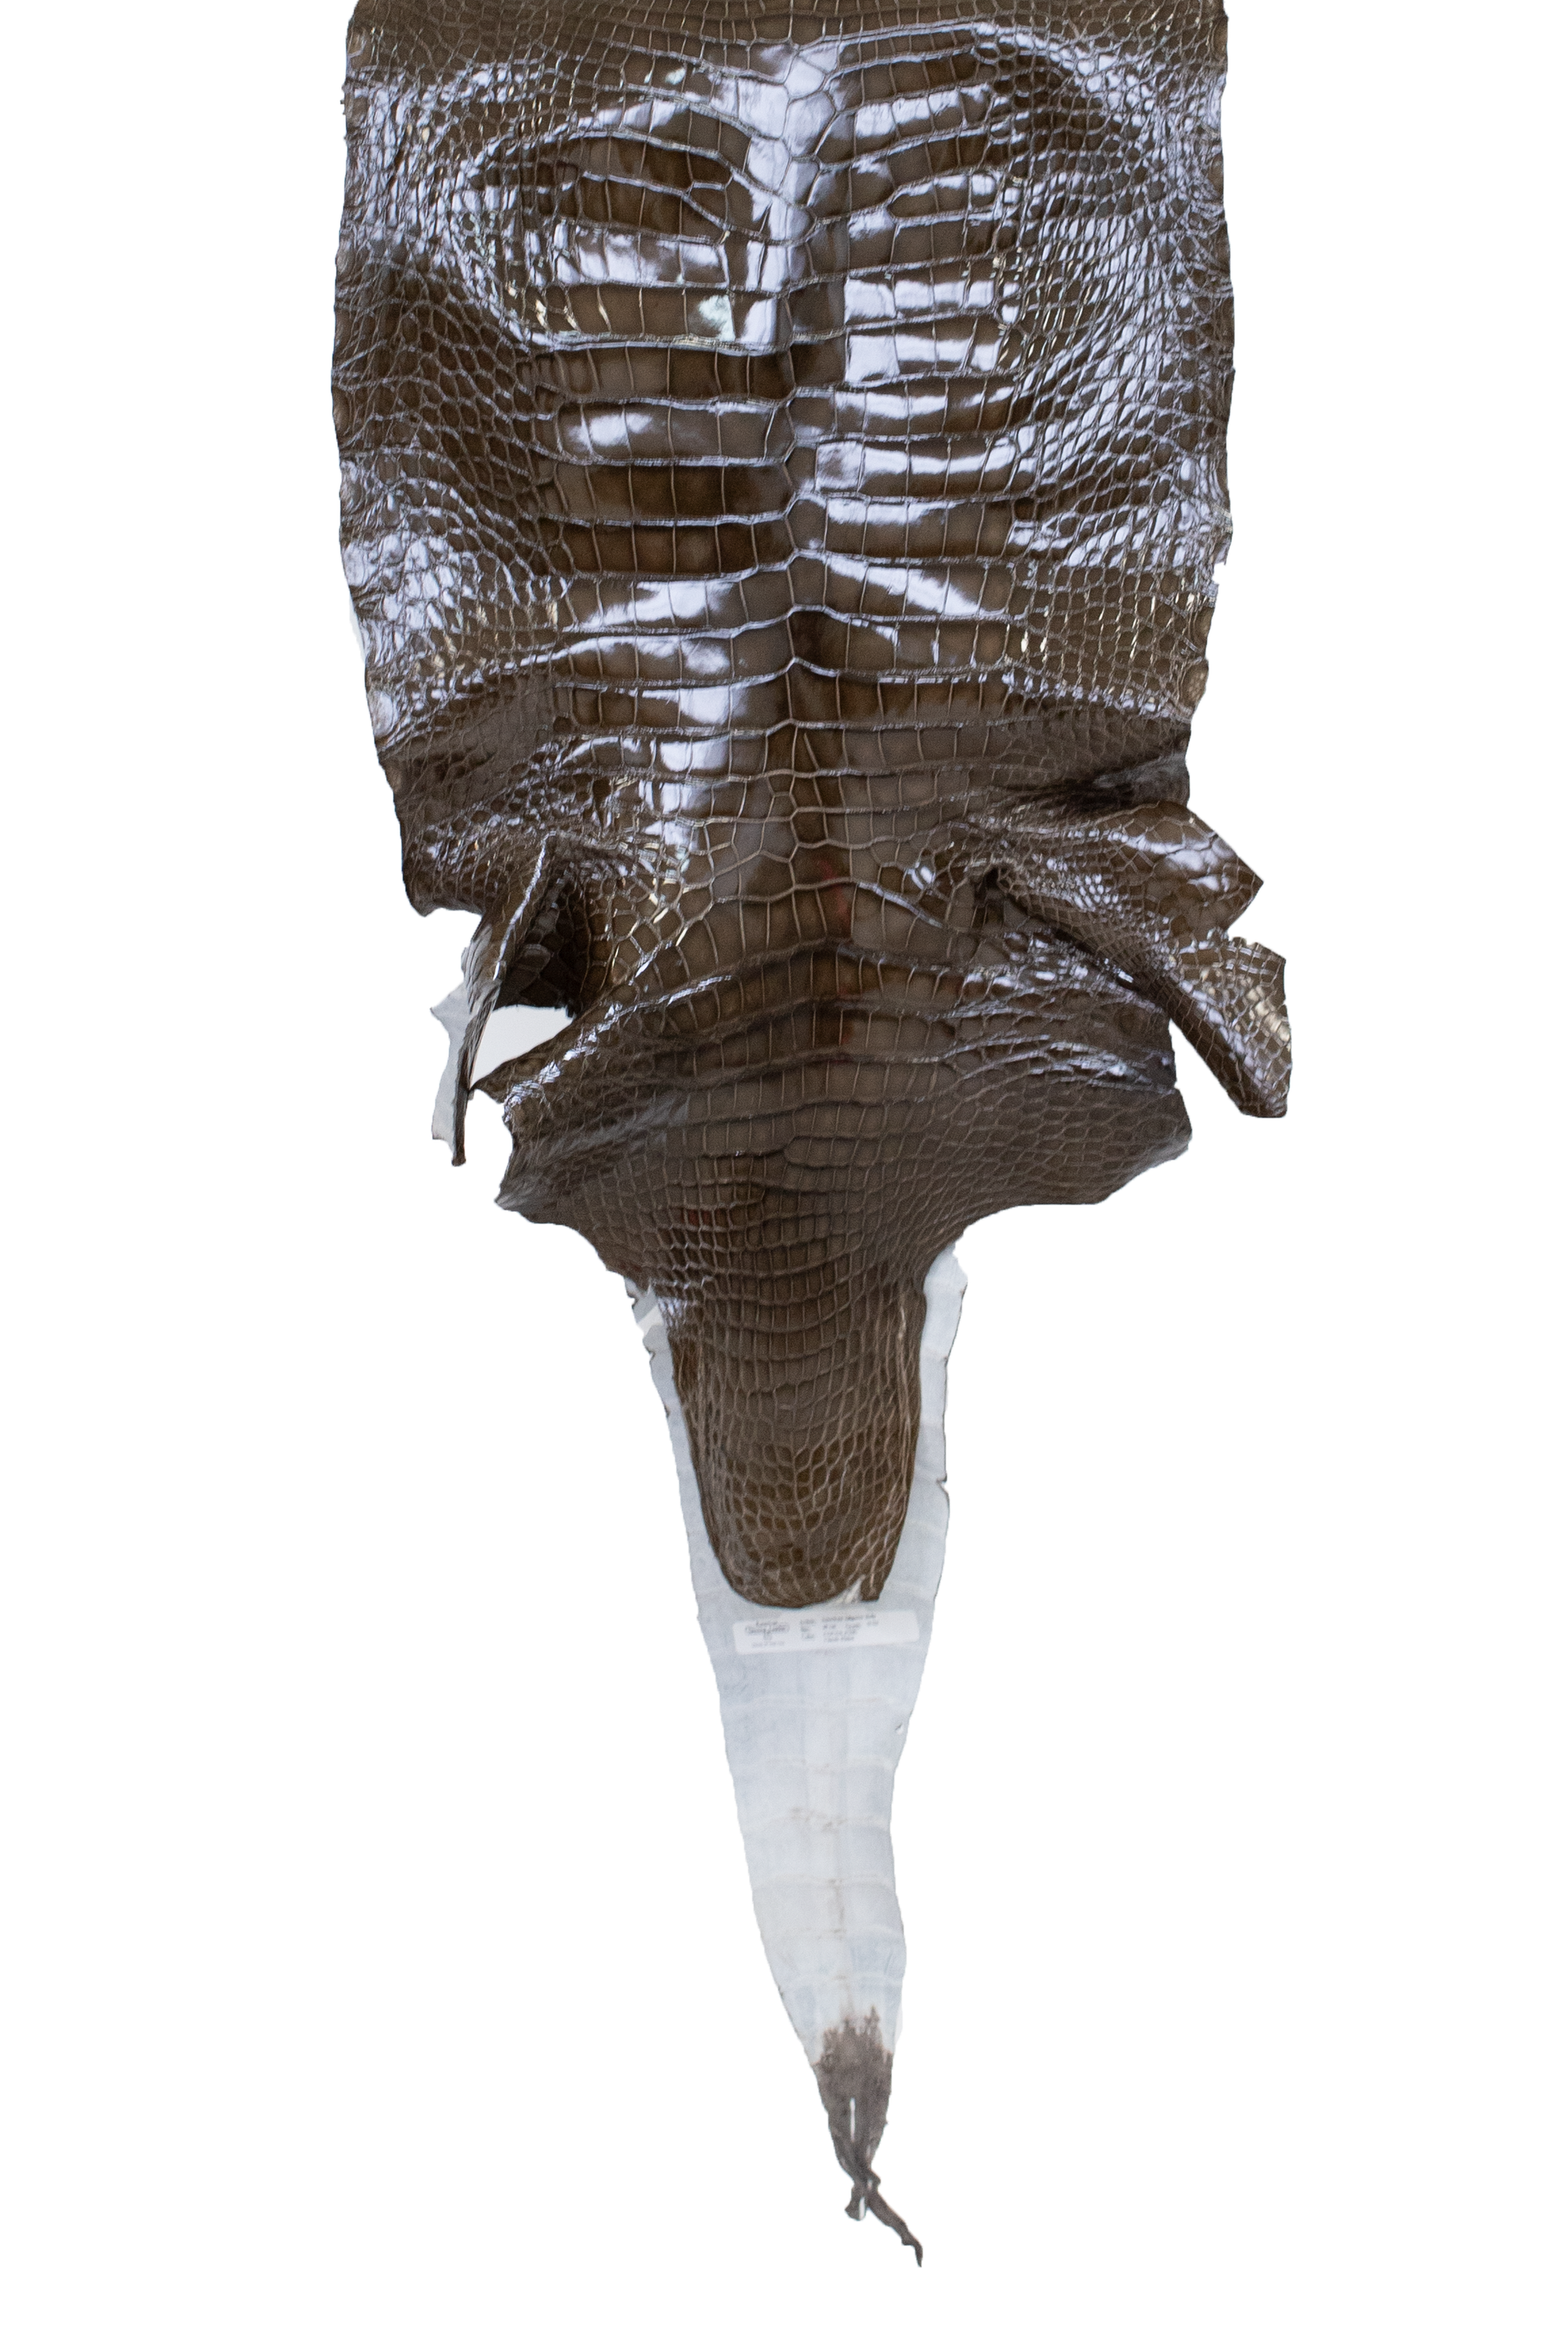 45 cm Grade 2/3 Cocoa Glazed Wild American Alligator Leather - Tag: LA17-0013652